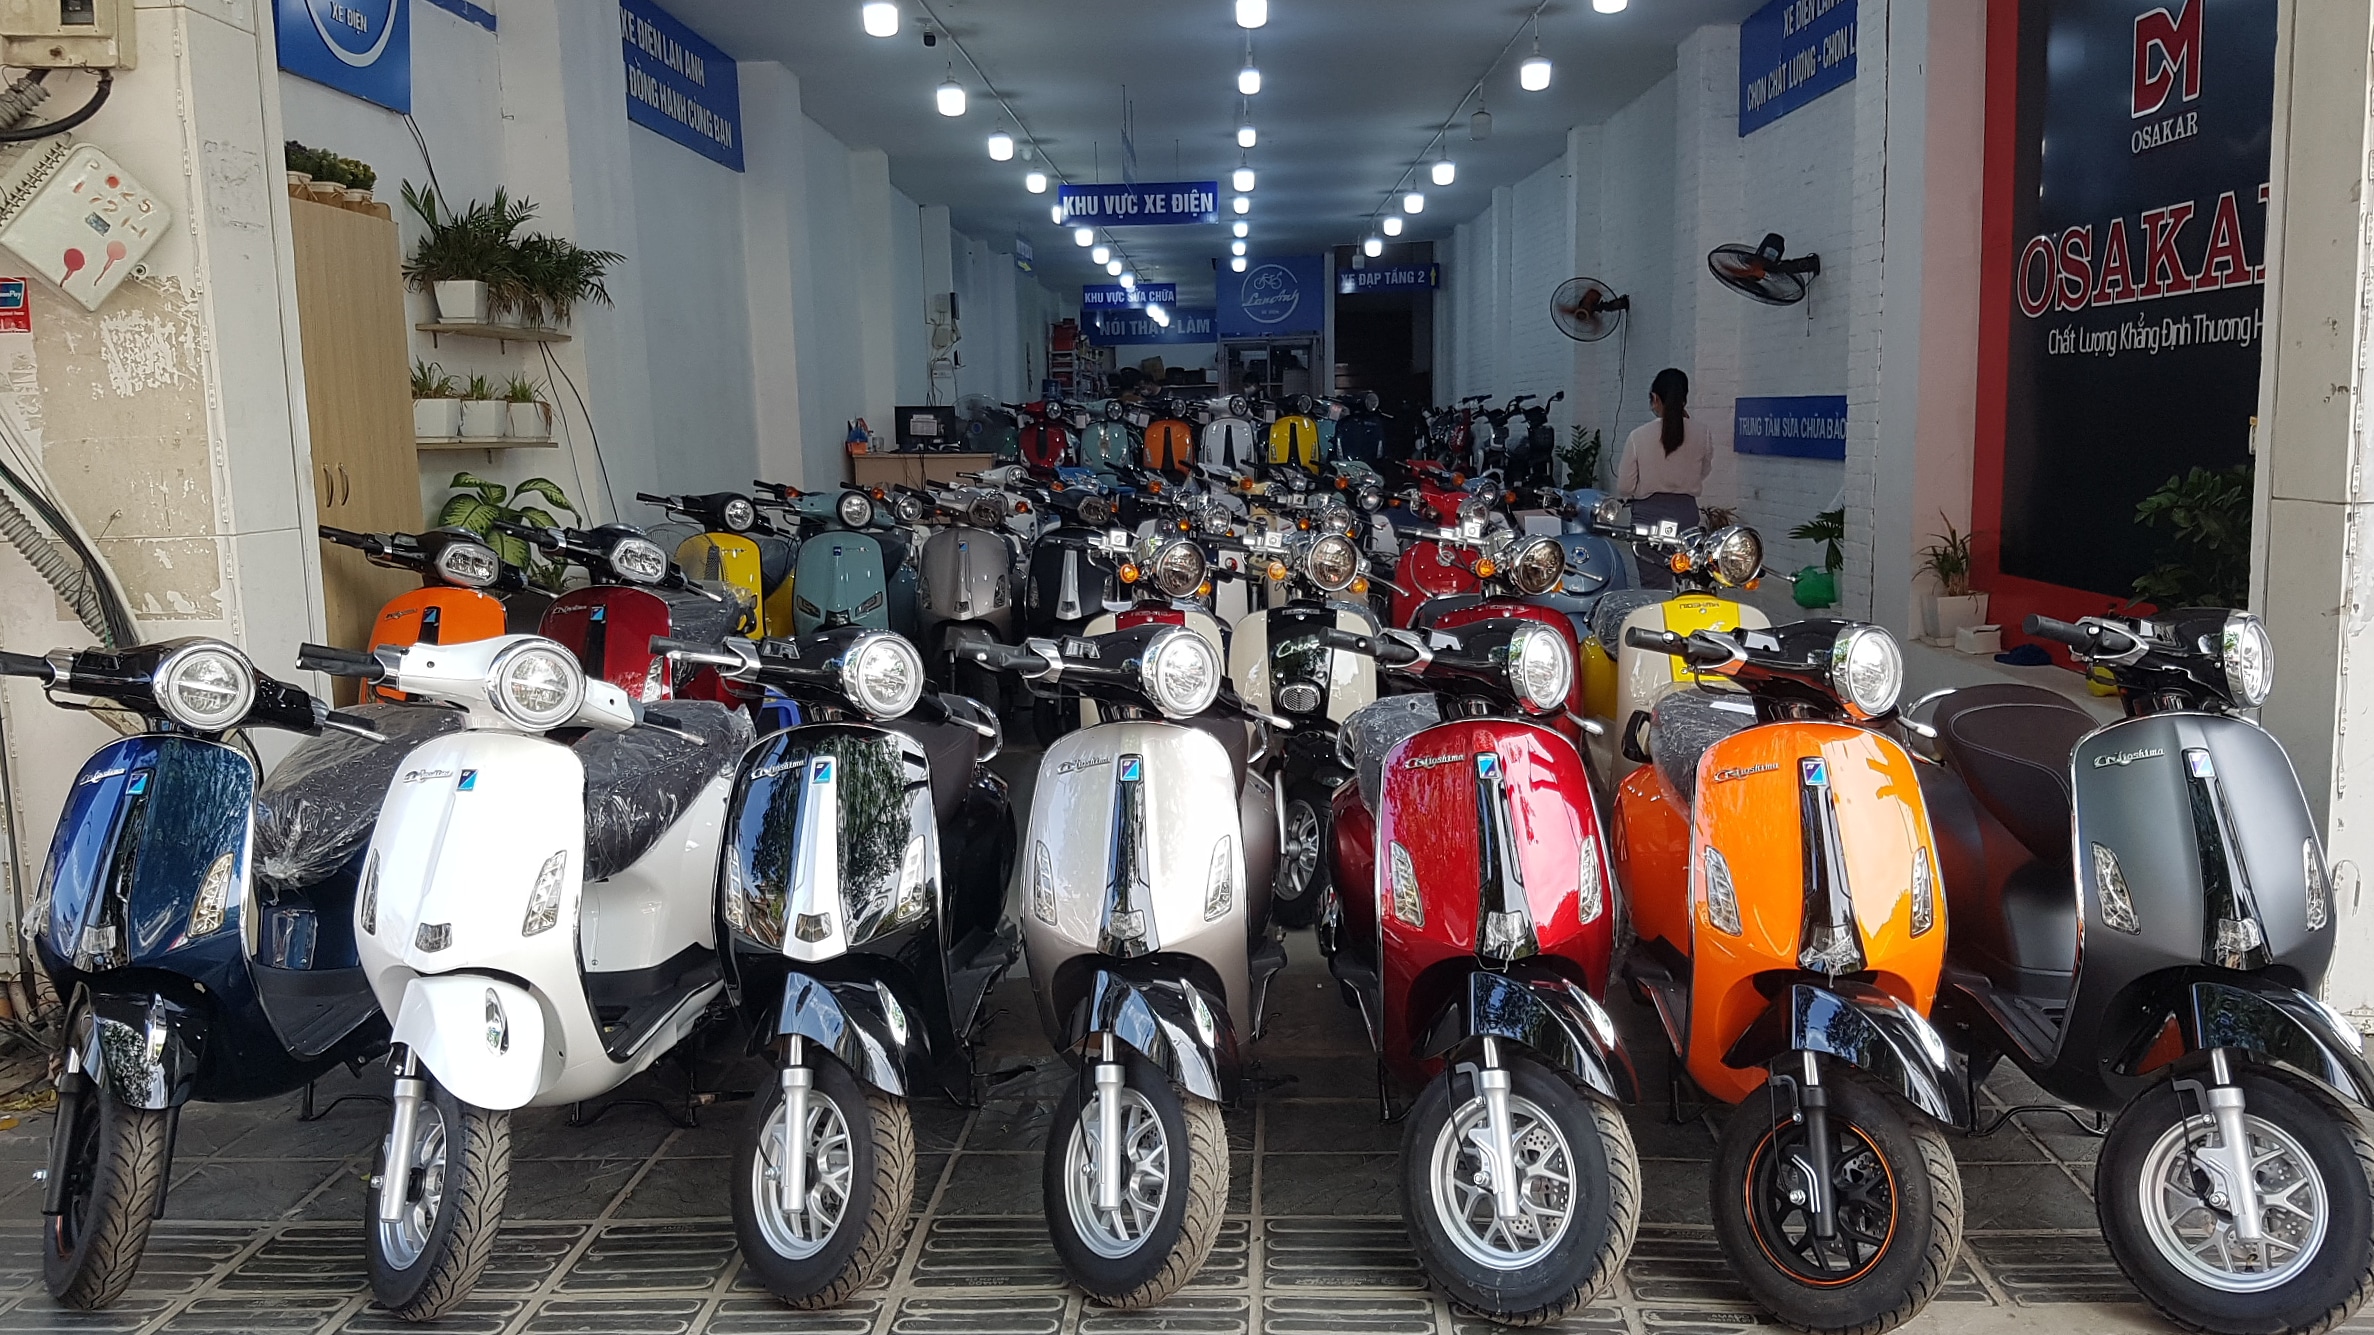 Chợ Tốt Xe Máy  Xe Honda Chính Hãng Từ Xe Số Đến Xe Tay Ga Giá Rẻ Tại Hà  Nội  YouTube